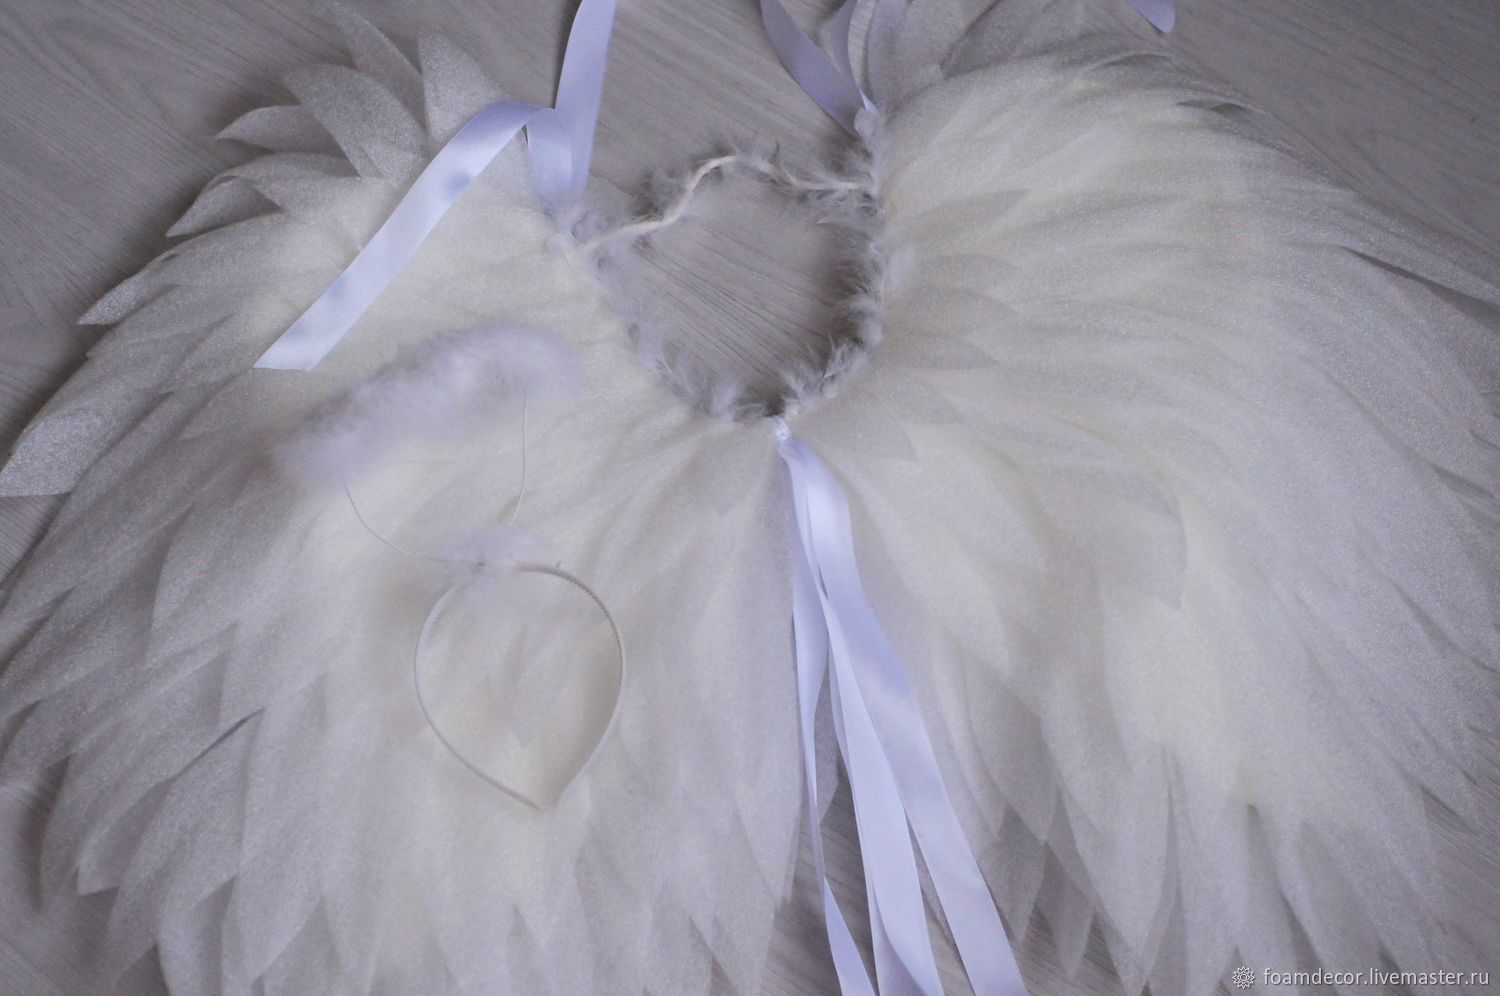 Ободок Нимб ангела 25см - купить в интернет-магазине Карнавал-СПб по цене руб.